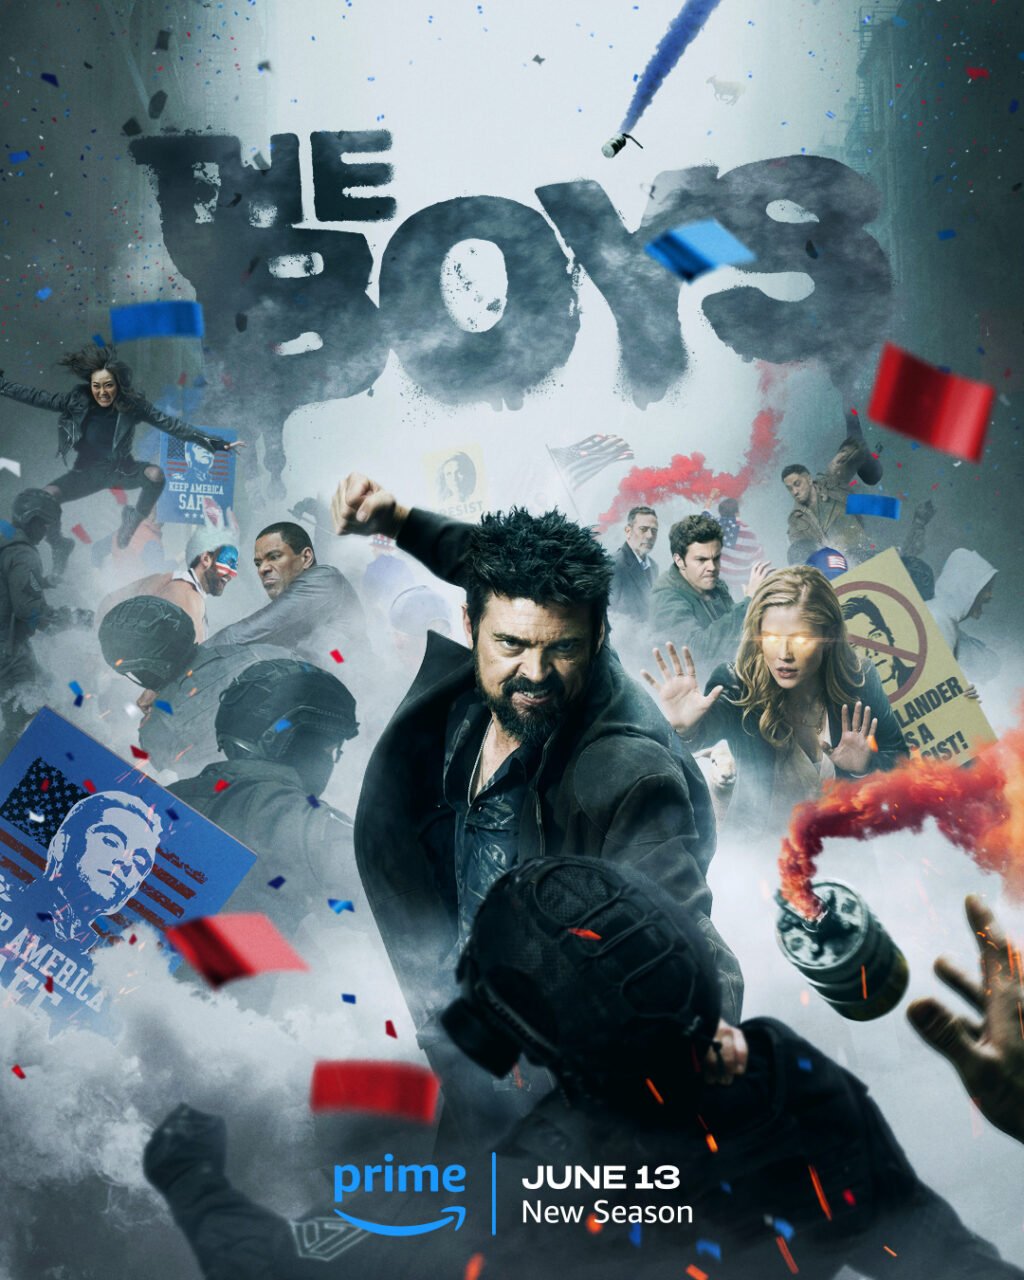 Kiedy premiera The Boys 4. Plakat promujący nowy sezon serialu "The Boys" z napisem "June 13" i logo Prime Video. Na pierwszym planie mężczyzna walczący z opancerzonymi funkcjonariuszami, w tle chaos i rzucane w górę przedmioty.